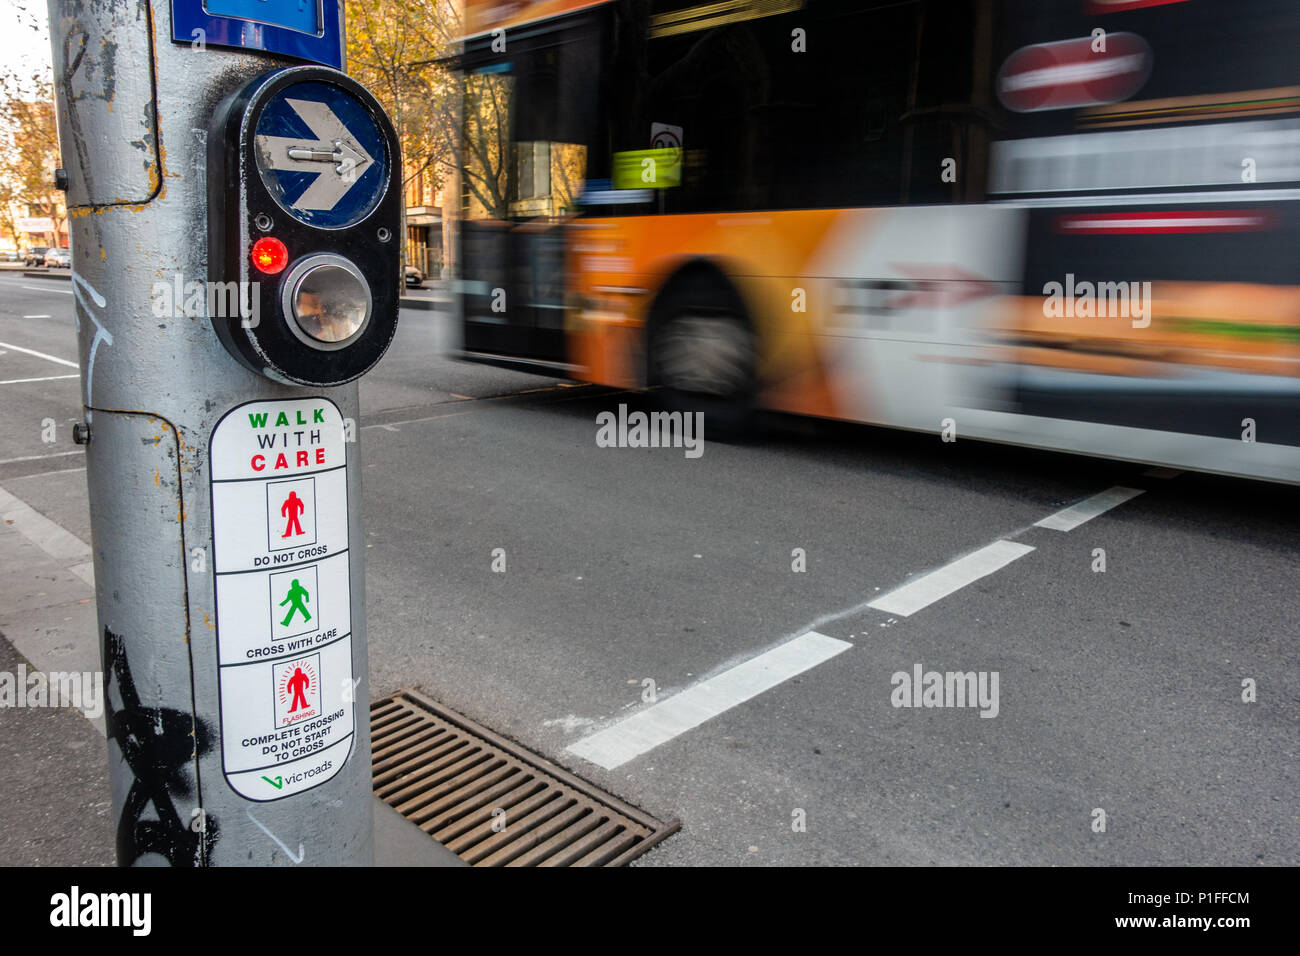 Bouton de passage pour piétons et des instructions à une intersection achalandée avec déplacement de bus sur route comme arrière-plan. Ville de Melbourne, Victoria Australie. Banque D'Images